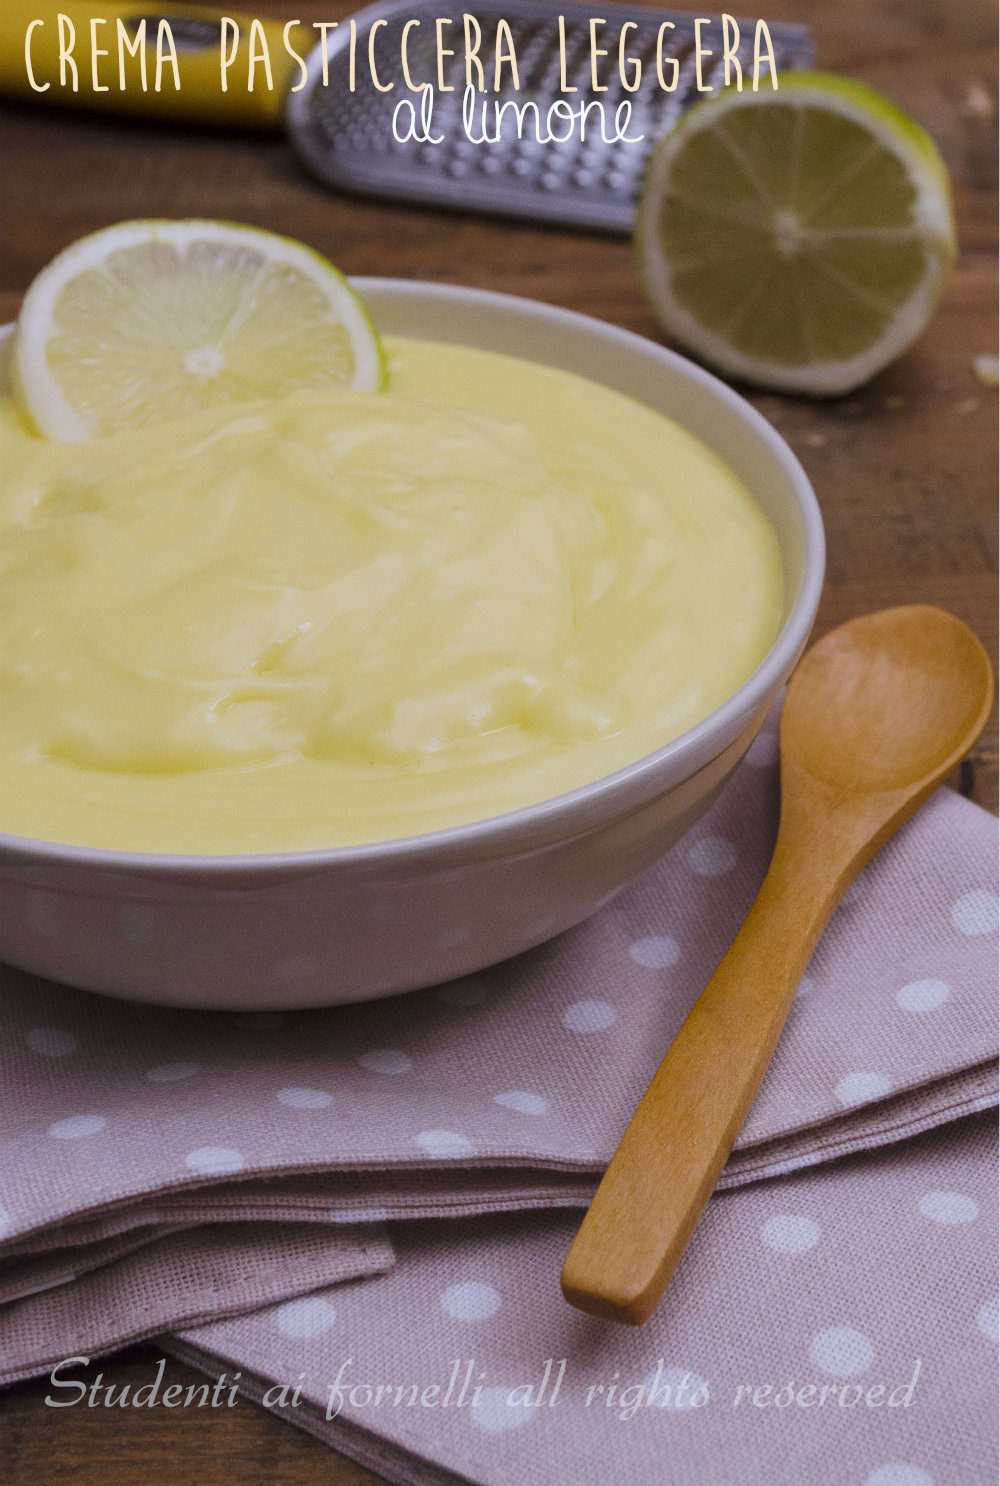 crema leggera al limone con 2 uova ricetta per torte crostate e biscotti